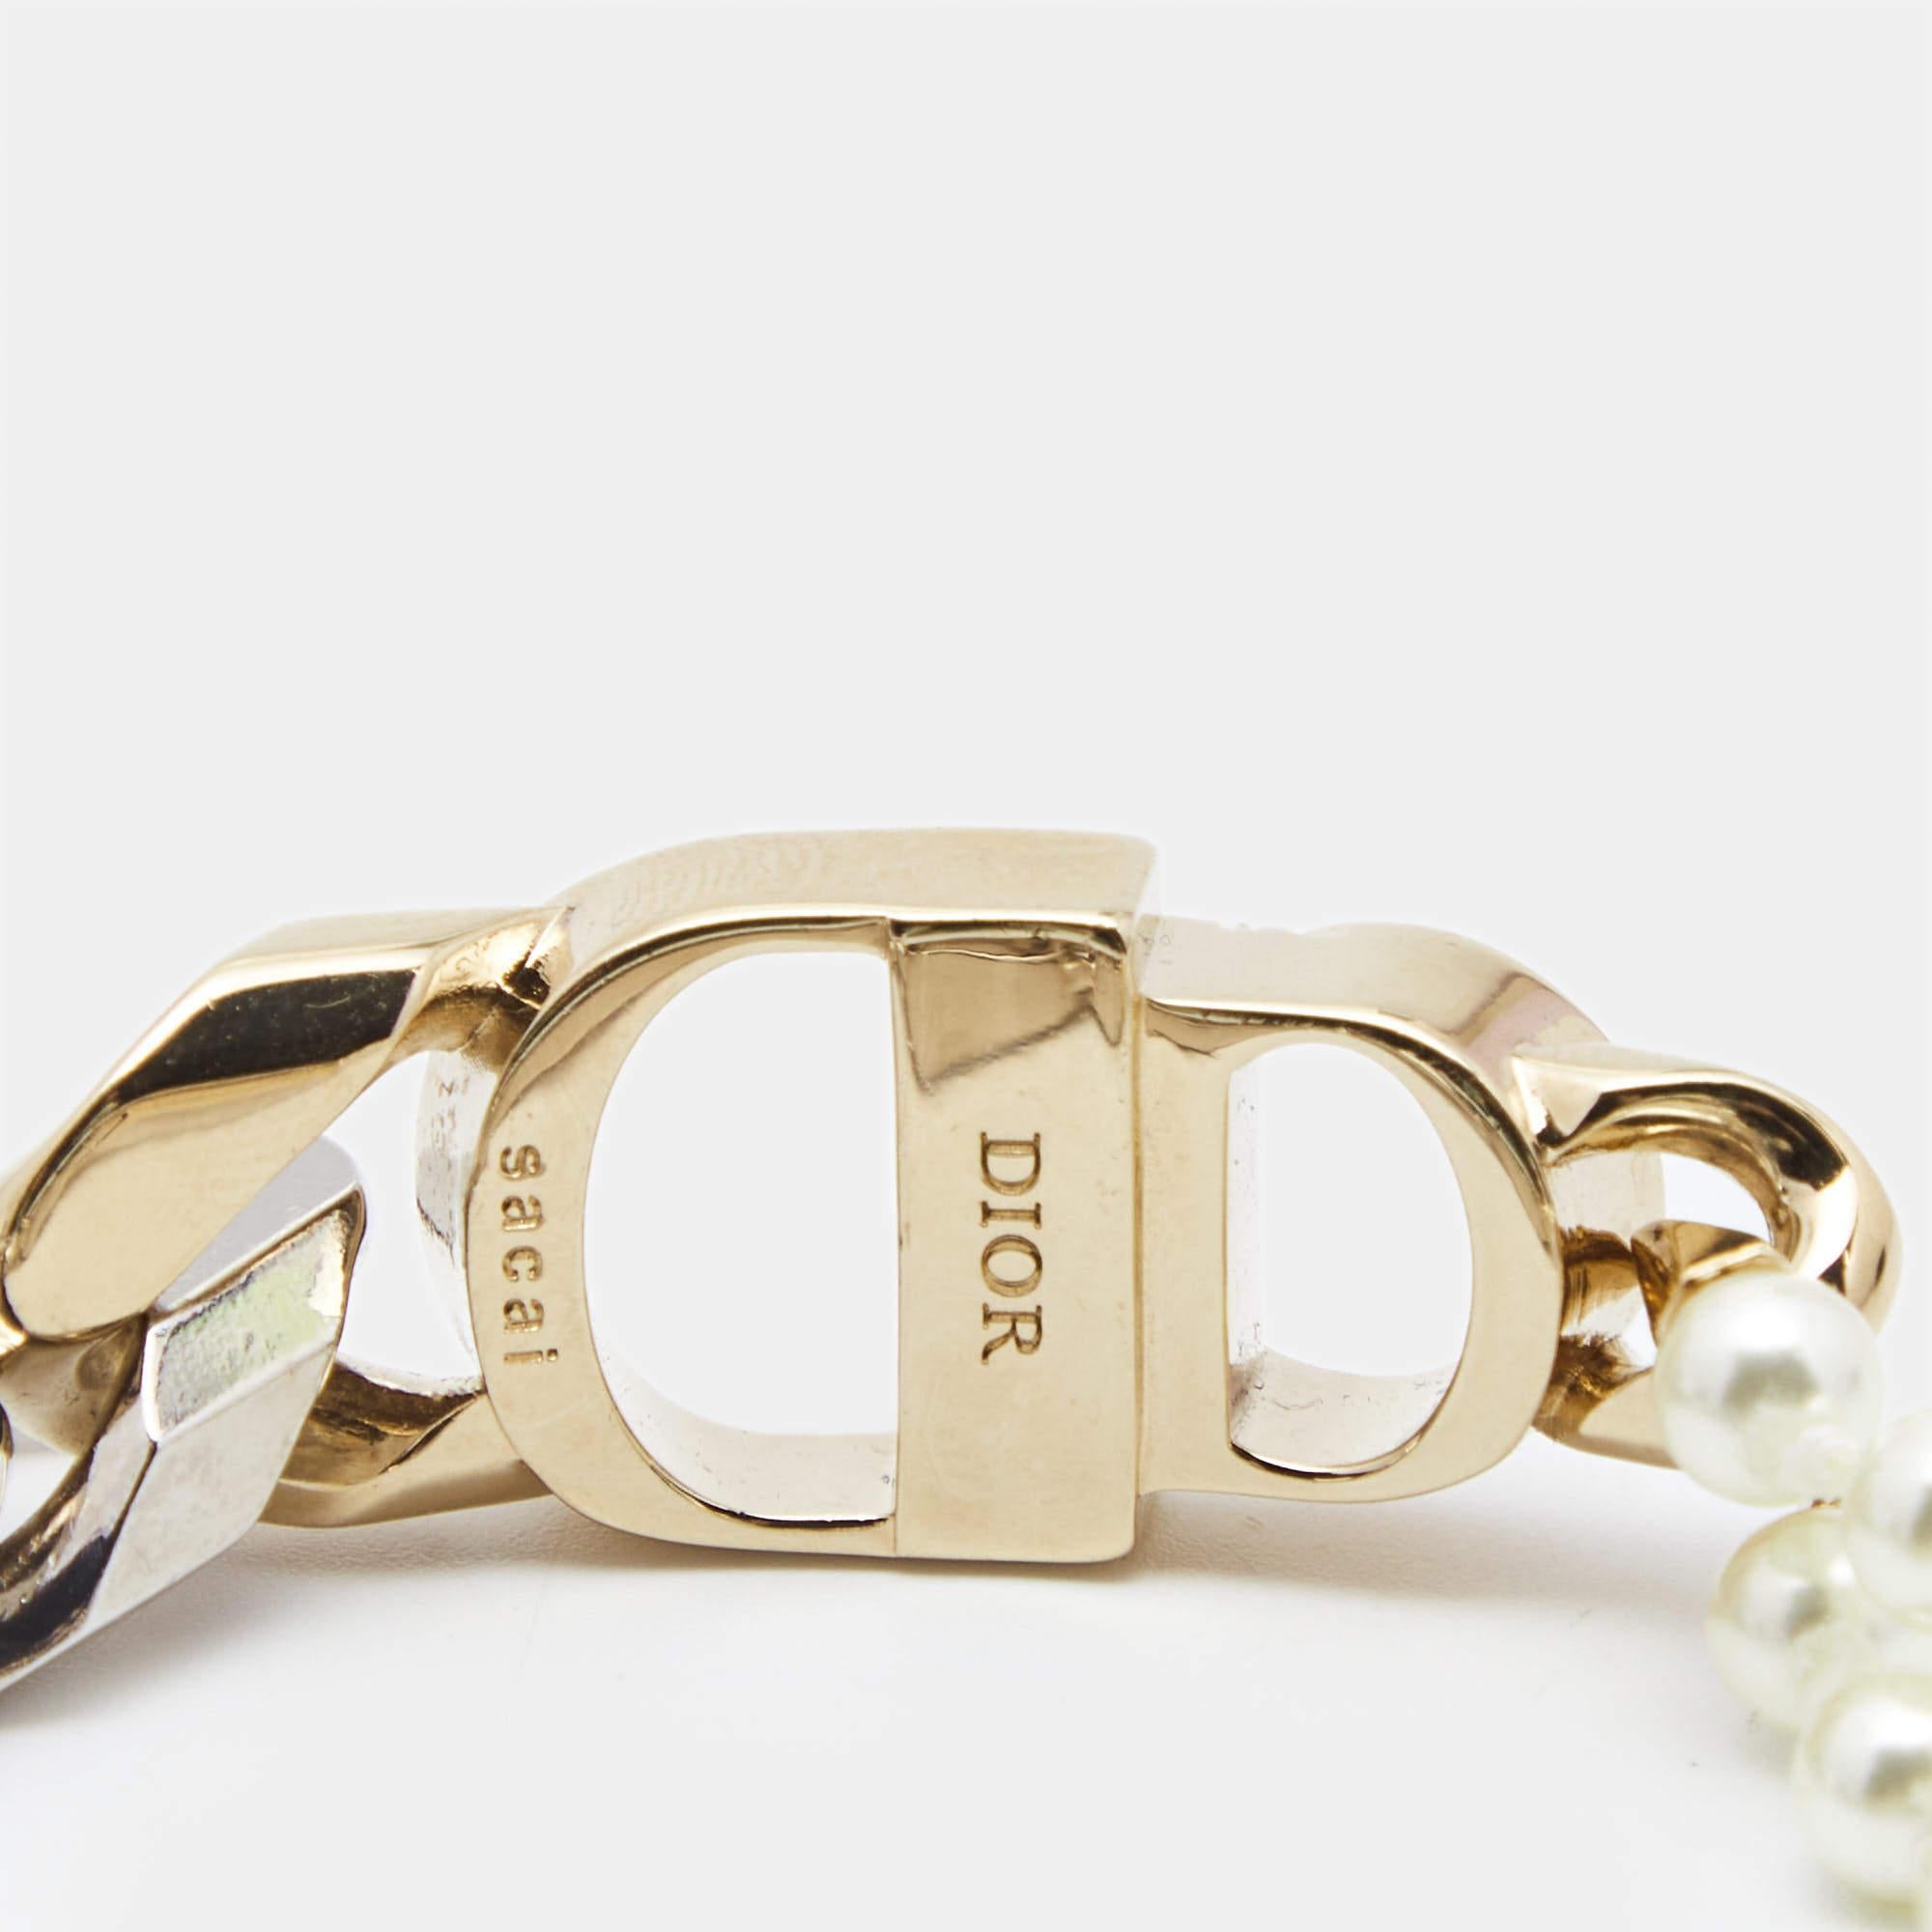 Dior x Sacai Faux Pearl Two Tone Bracelet In Good Condition For Sale In Dubai, Al Qouz 2